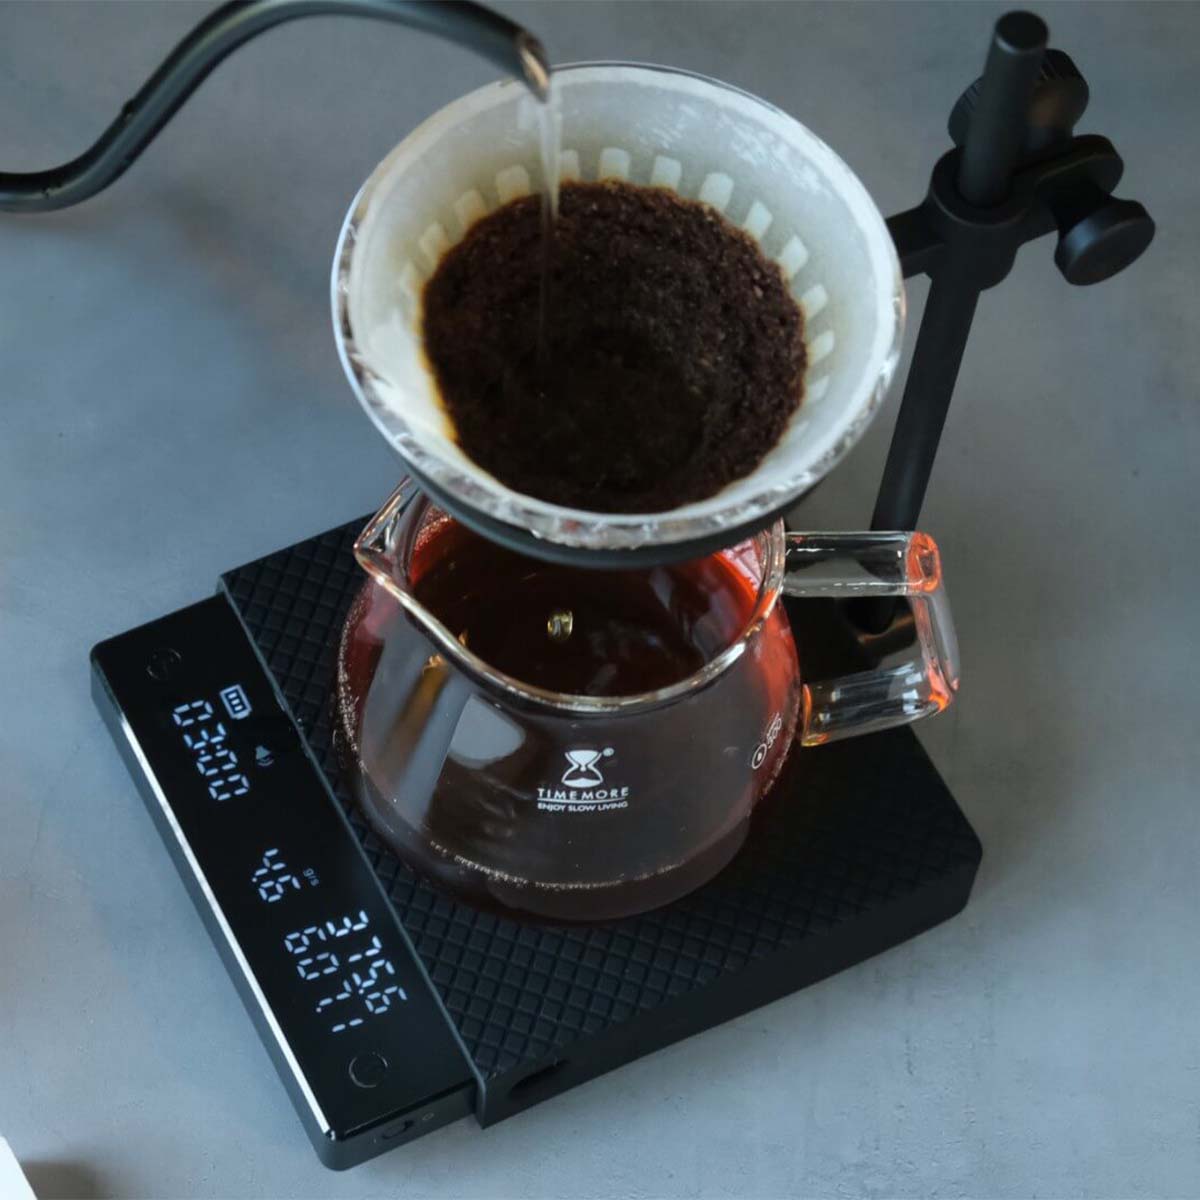 TIMEMORE Black Mirror Nano Scale Pour over Coffee Espresso Scale 0.1g / 2kg  mode